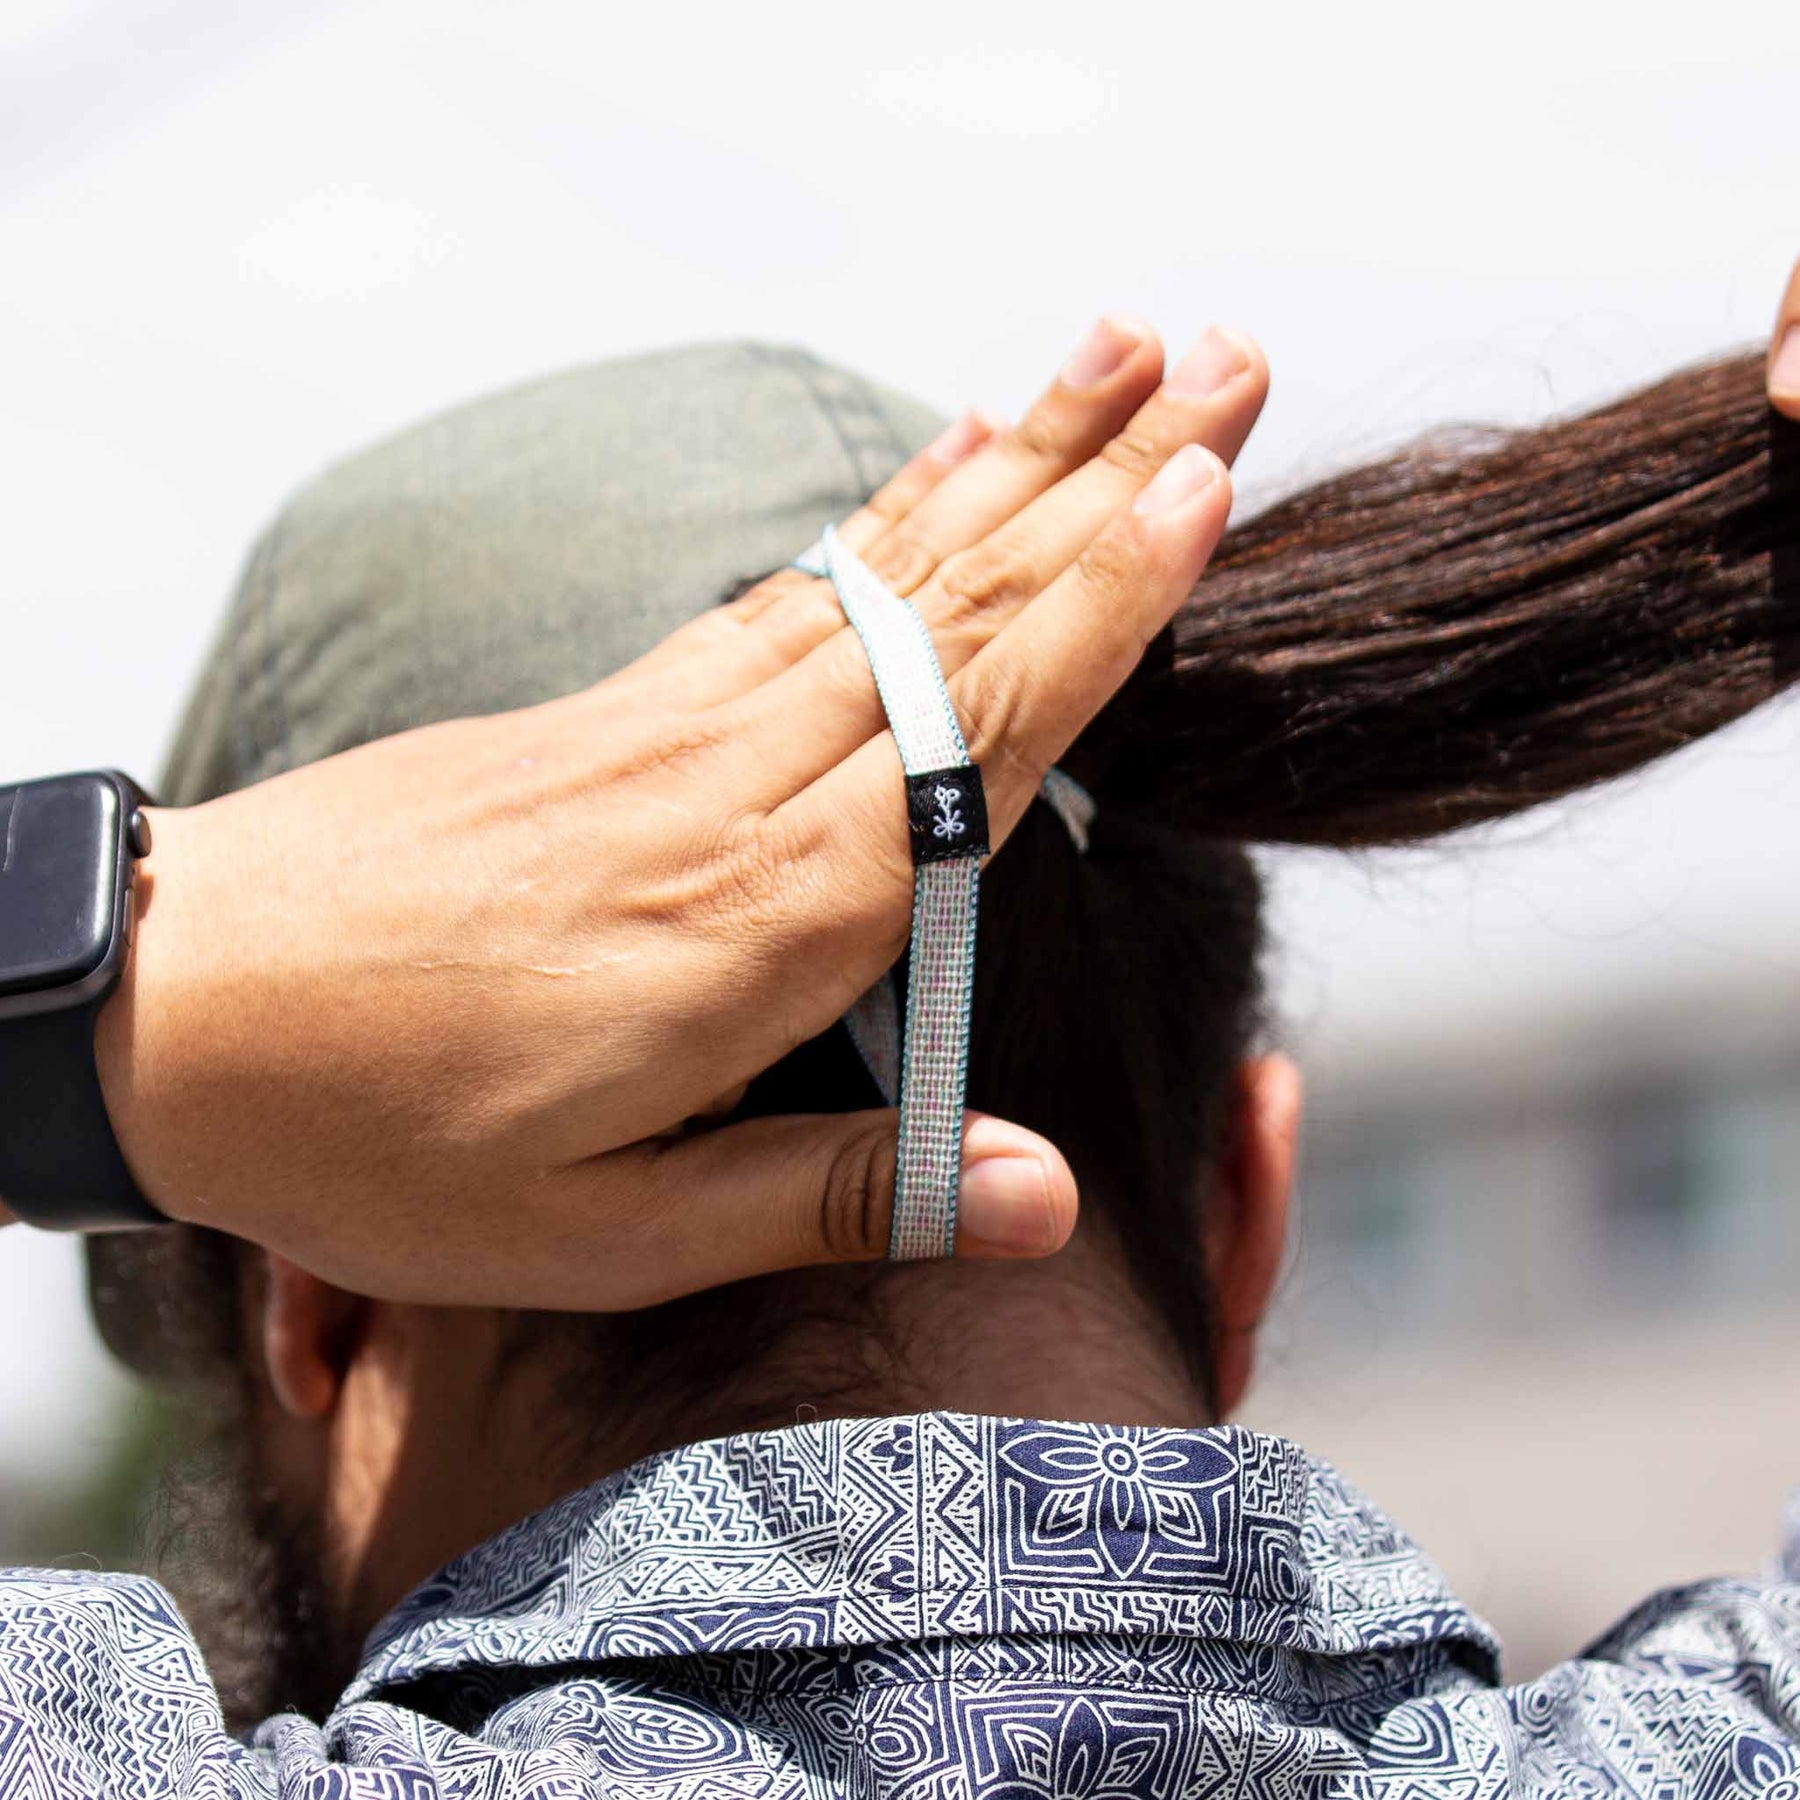 The Longhairs Heavy Metal Hair Ties | Best Hair Ties in The World